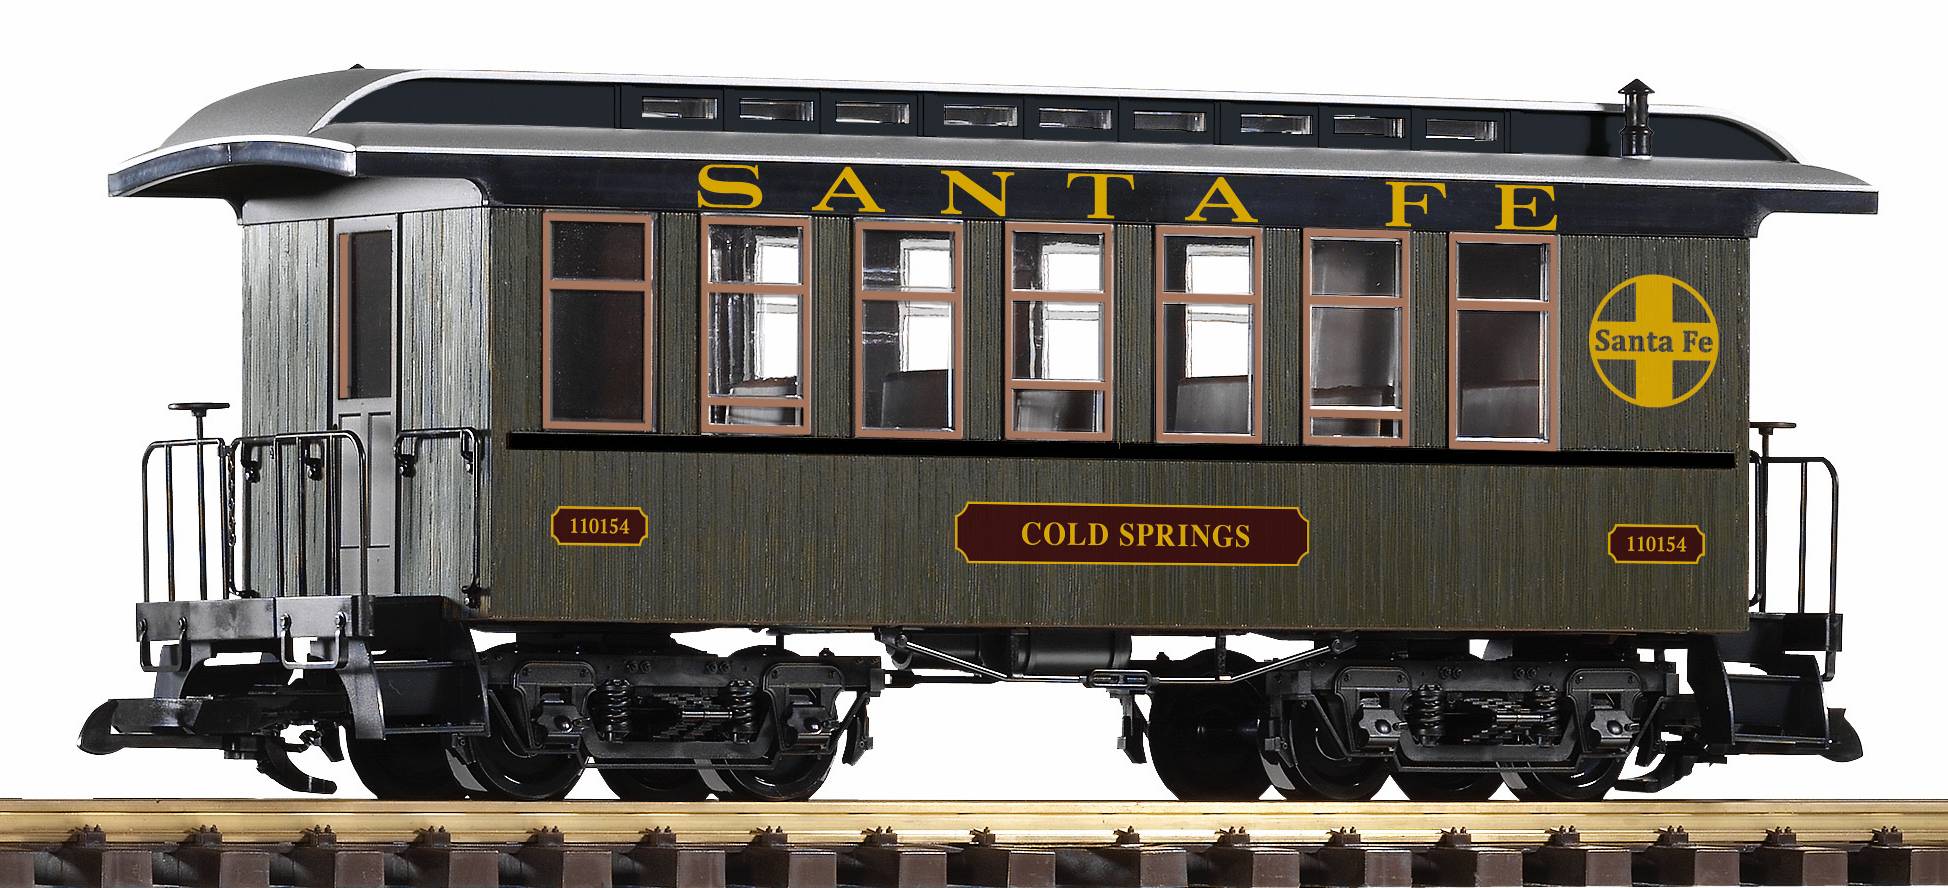 G Personenwagen, Santa Fe, Cold Springs, 110154, Art. Nr. 38664